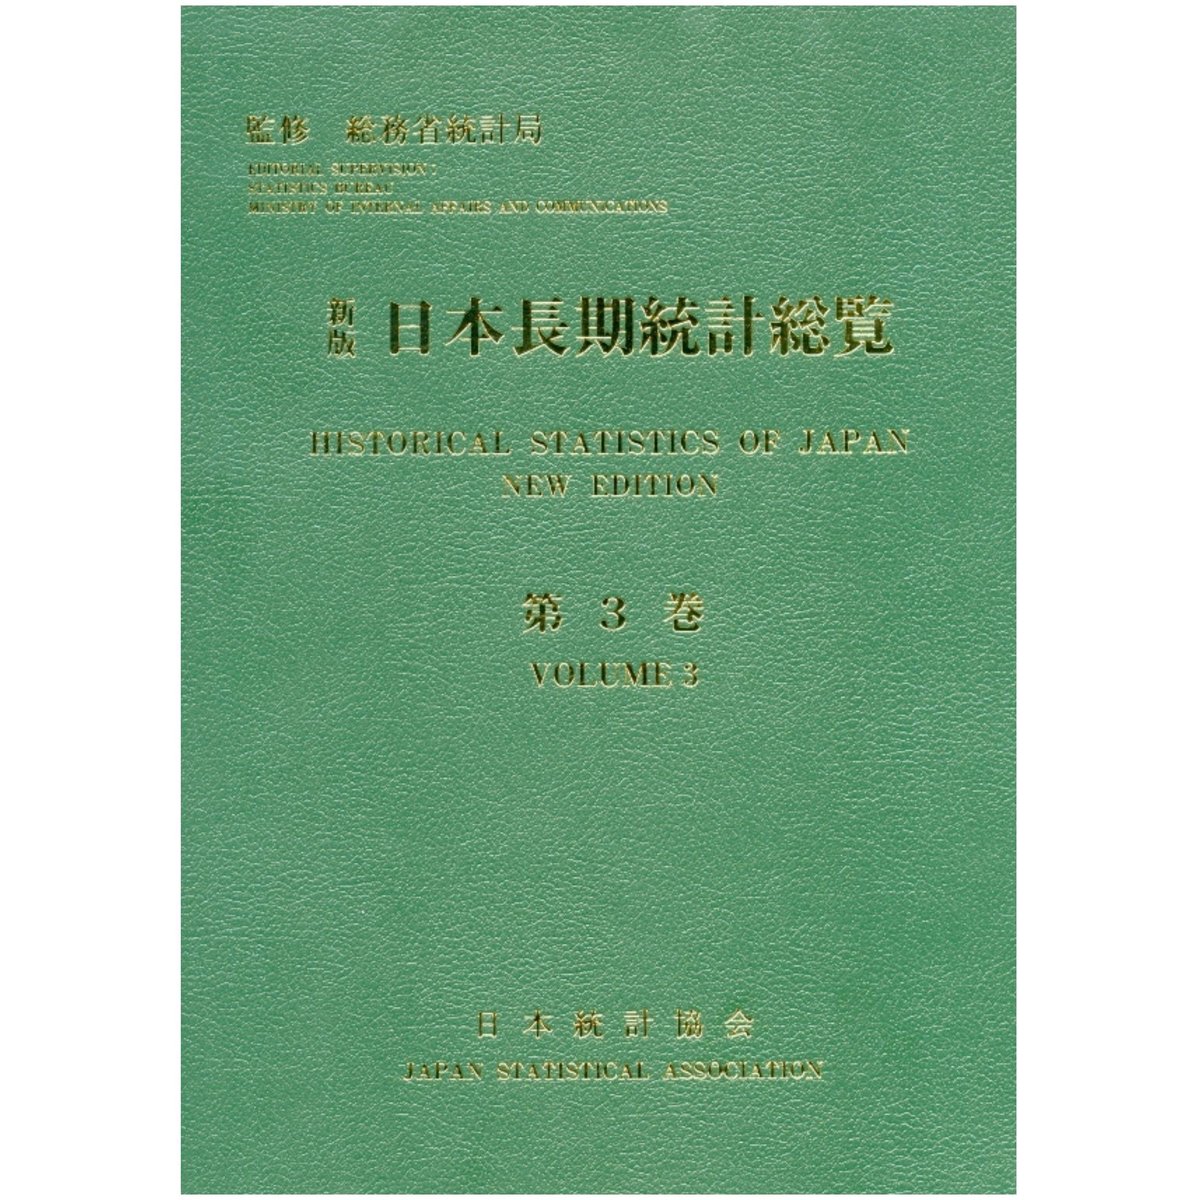 新版 日本長期統計総覧 第4巻 付属資料:CD-ROM(1枚)昭和情報プロセス